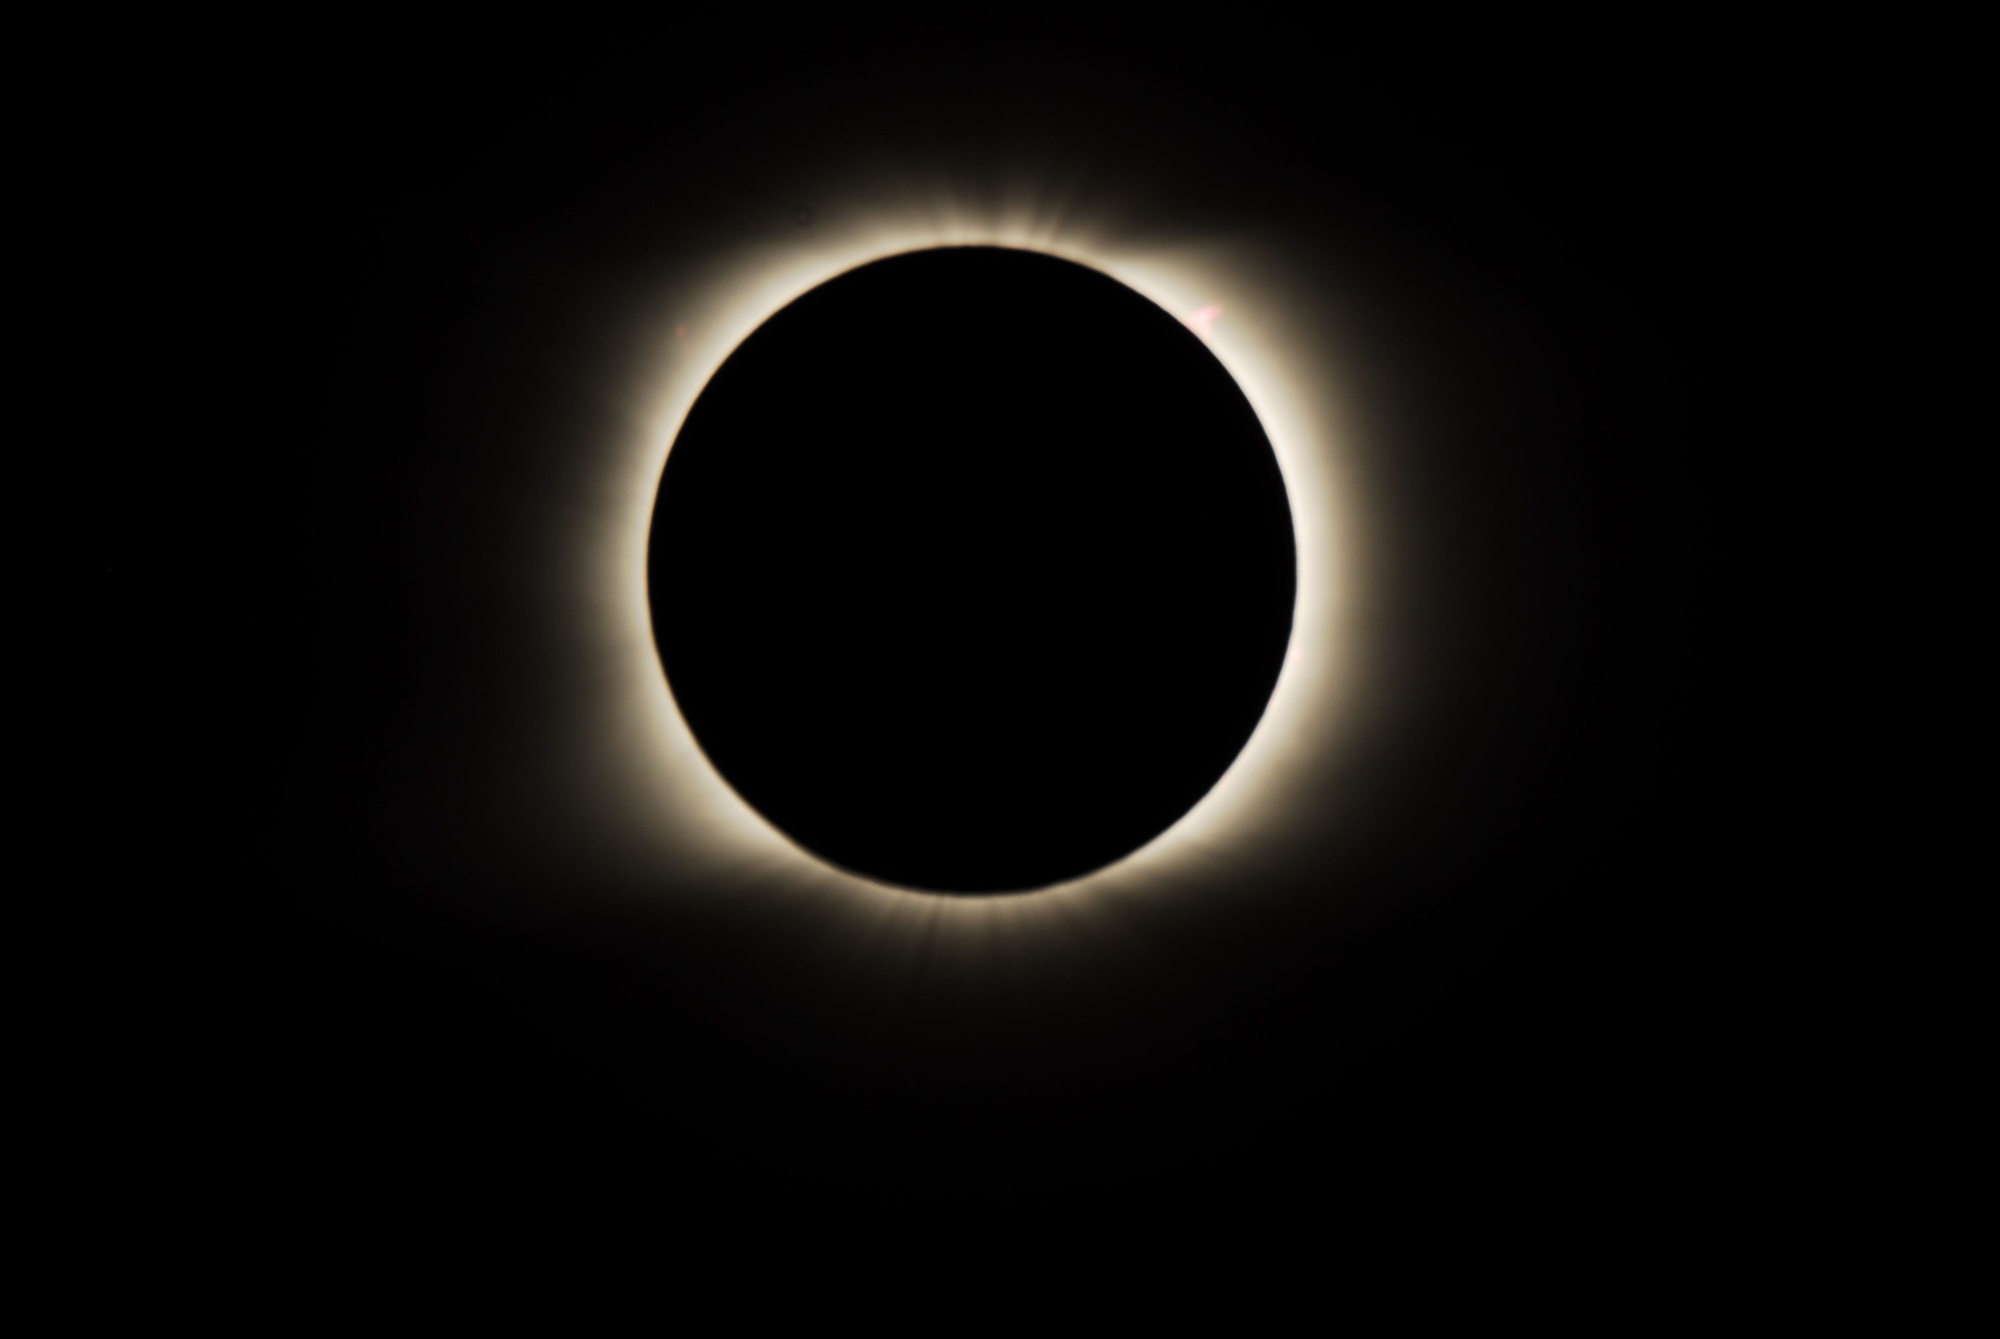 Съемка «Веги» солнечного затмения 2008 года, если присмотреться, на час дня видно протуберанец «Голова коня»